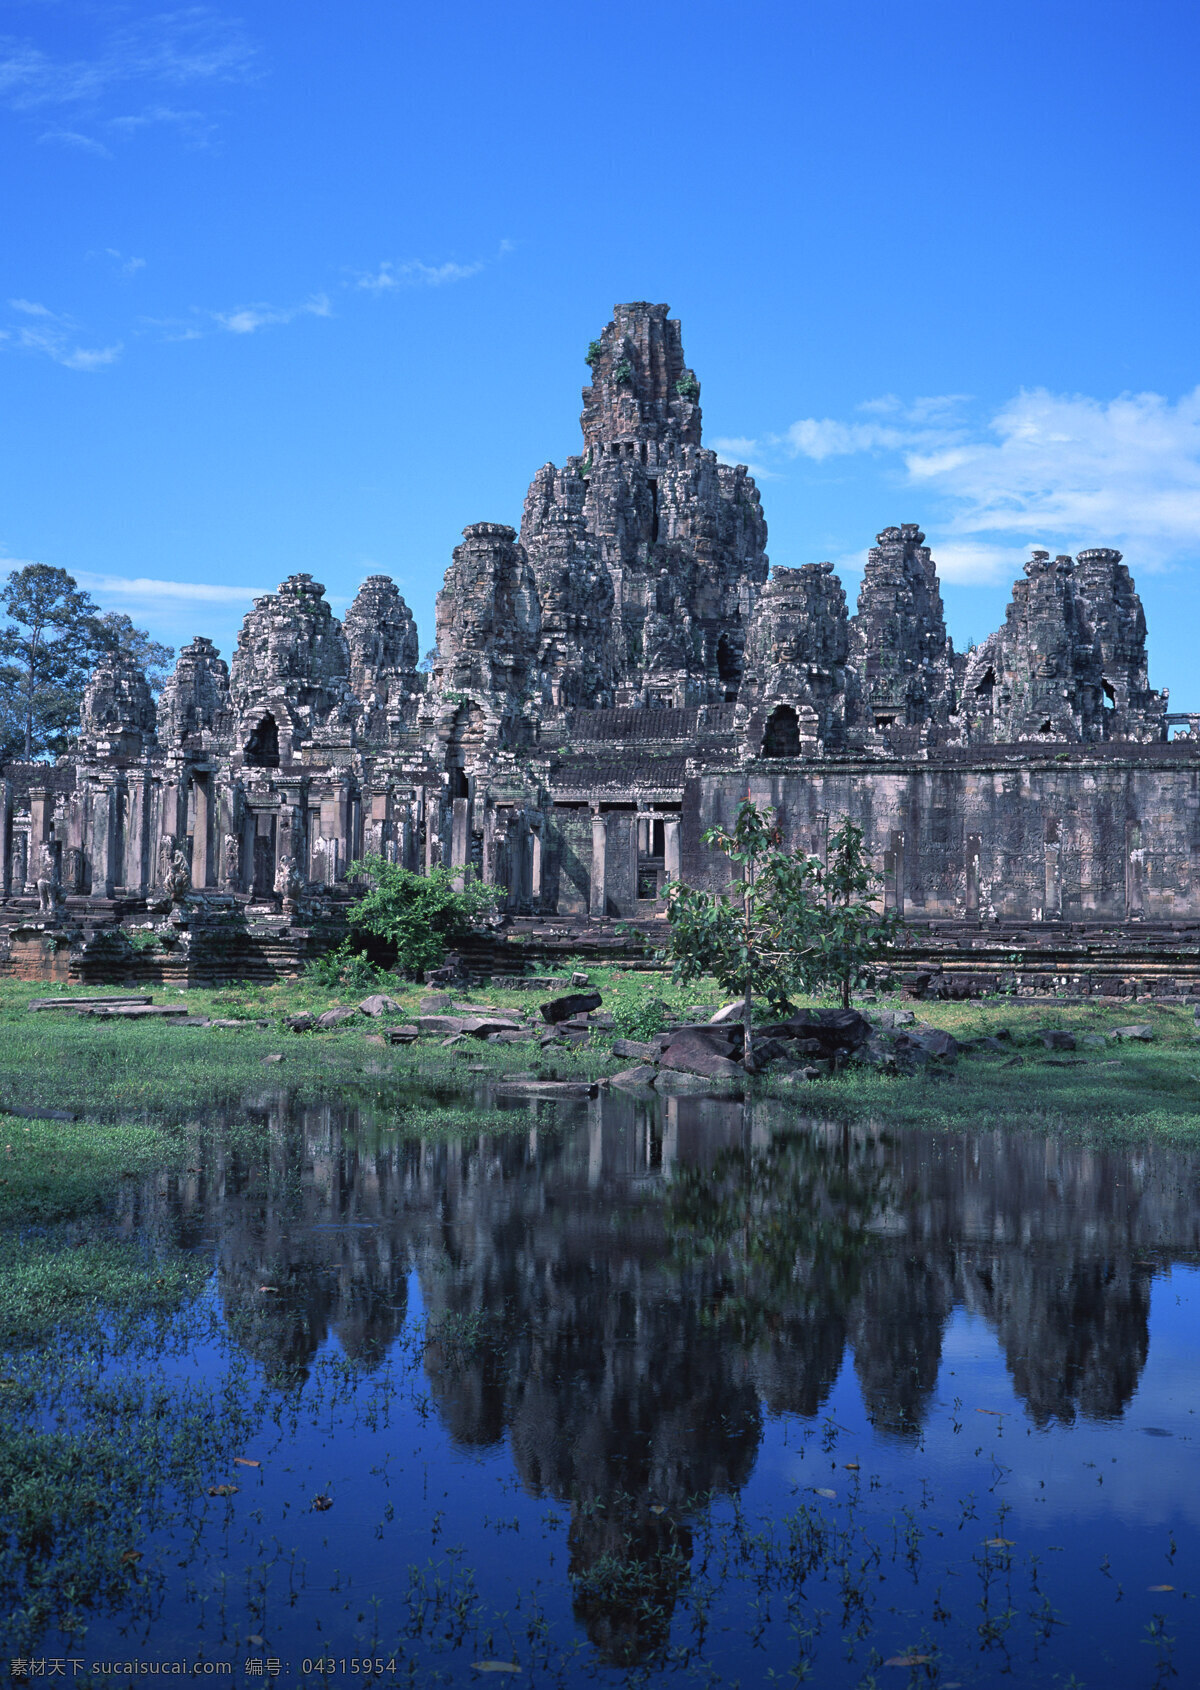 唯美 风景 风光 人文 柬埔寨 东南亚 吴哥窟 石窟 雕塑 文化 古迹 旅游摄影 国外旅游